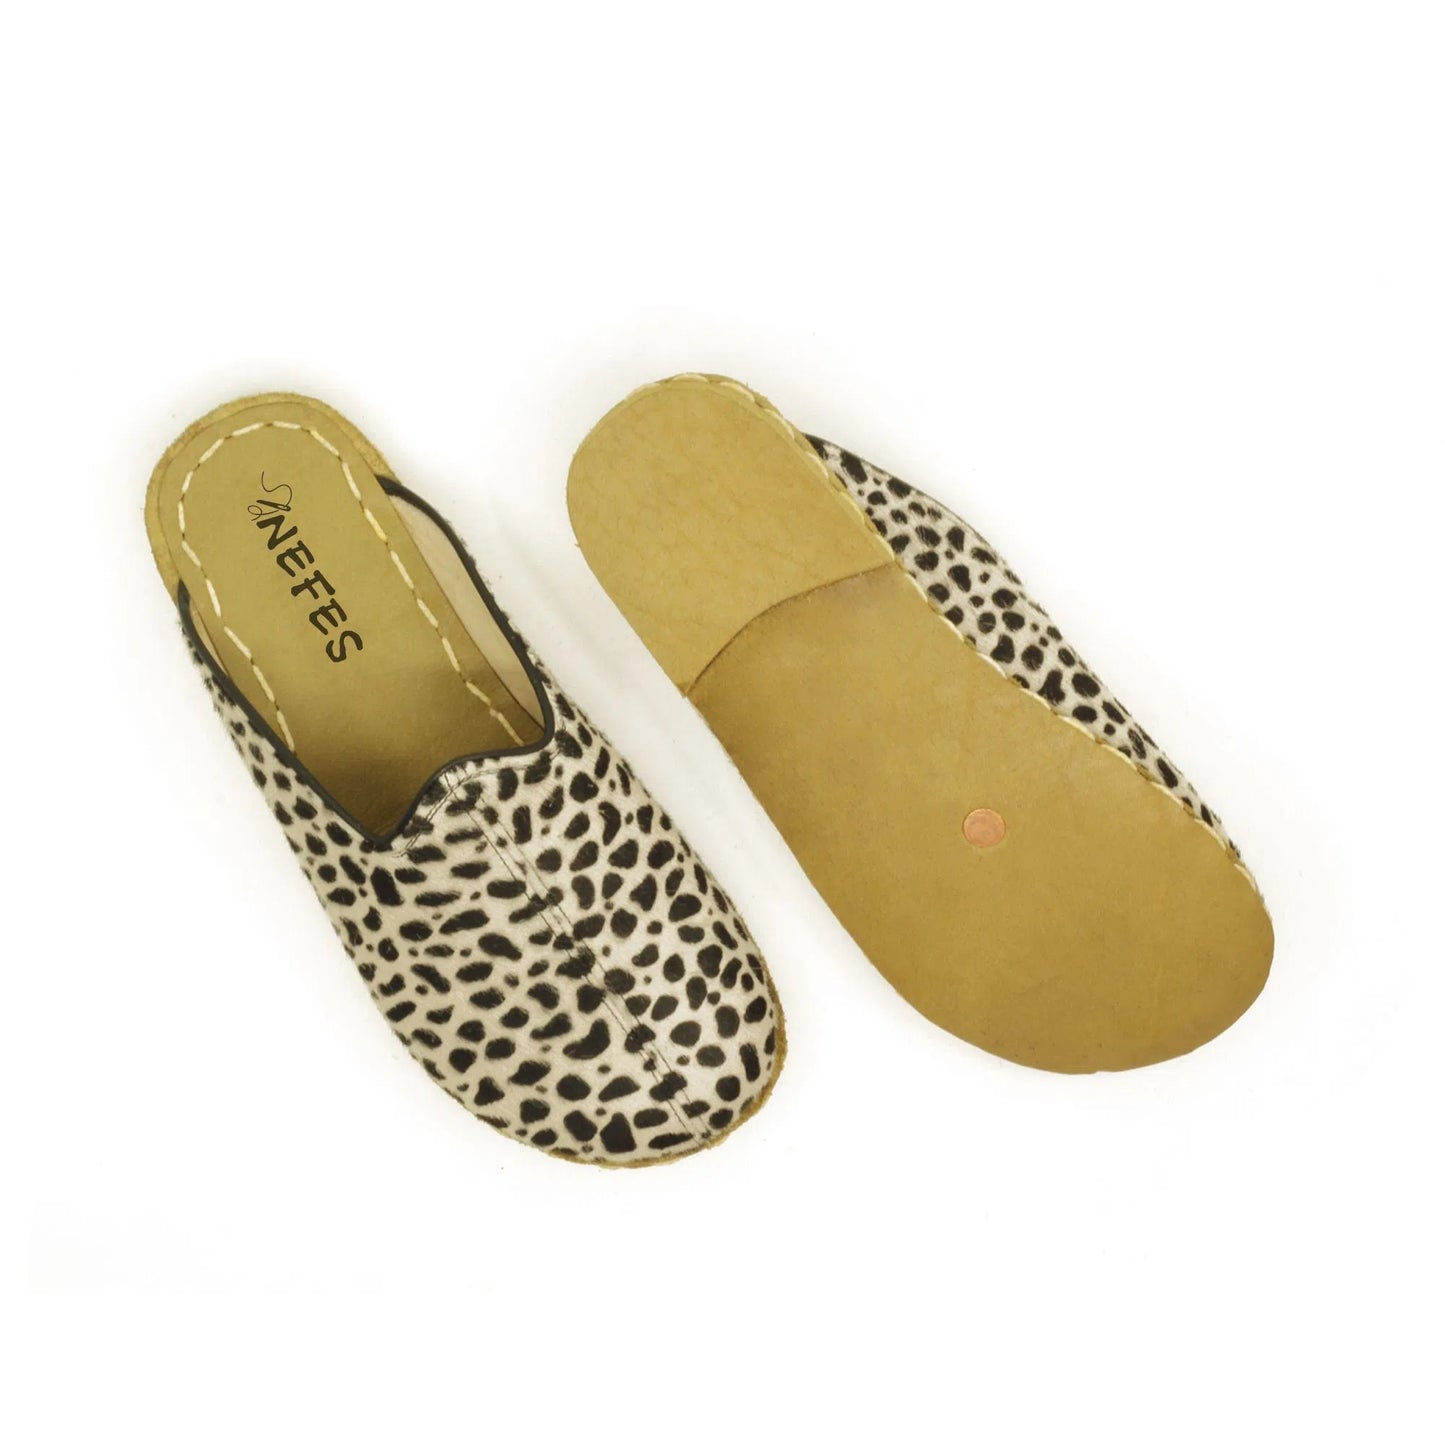 Leopard Hairy Leather Slippers Barefoot-nefesshoes-4-Nefes Shoes